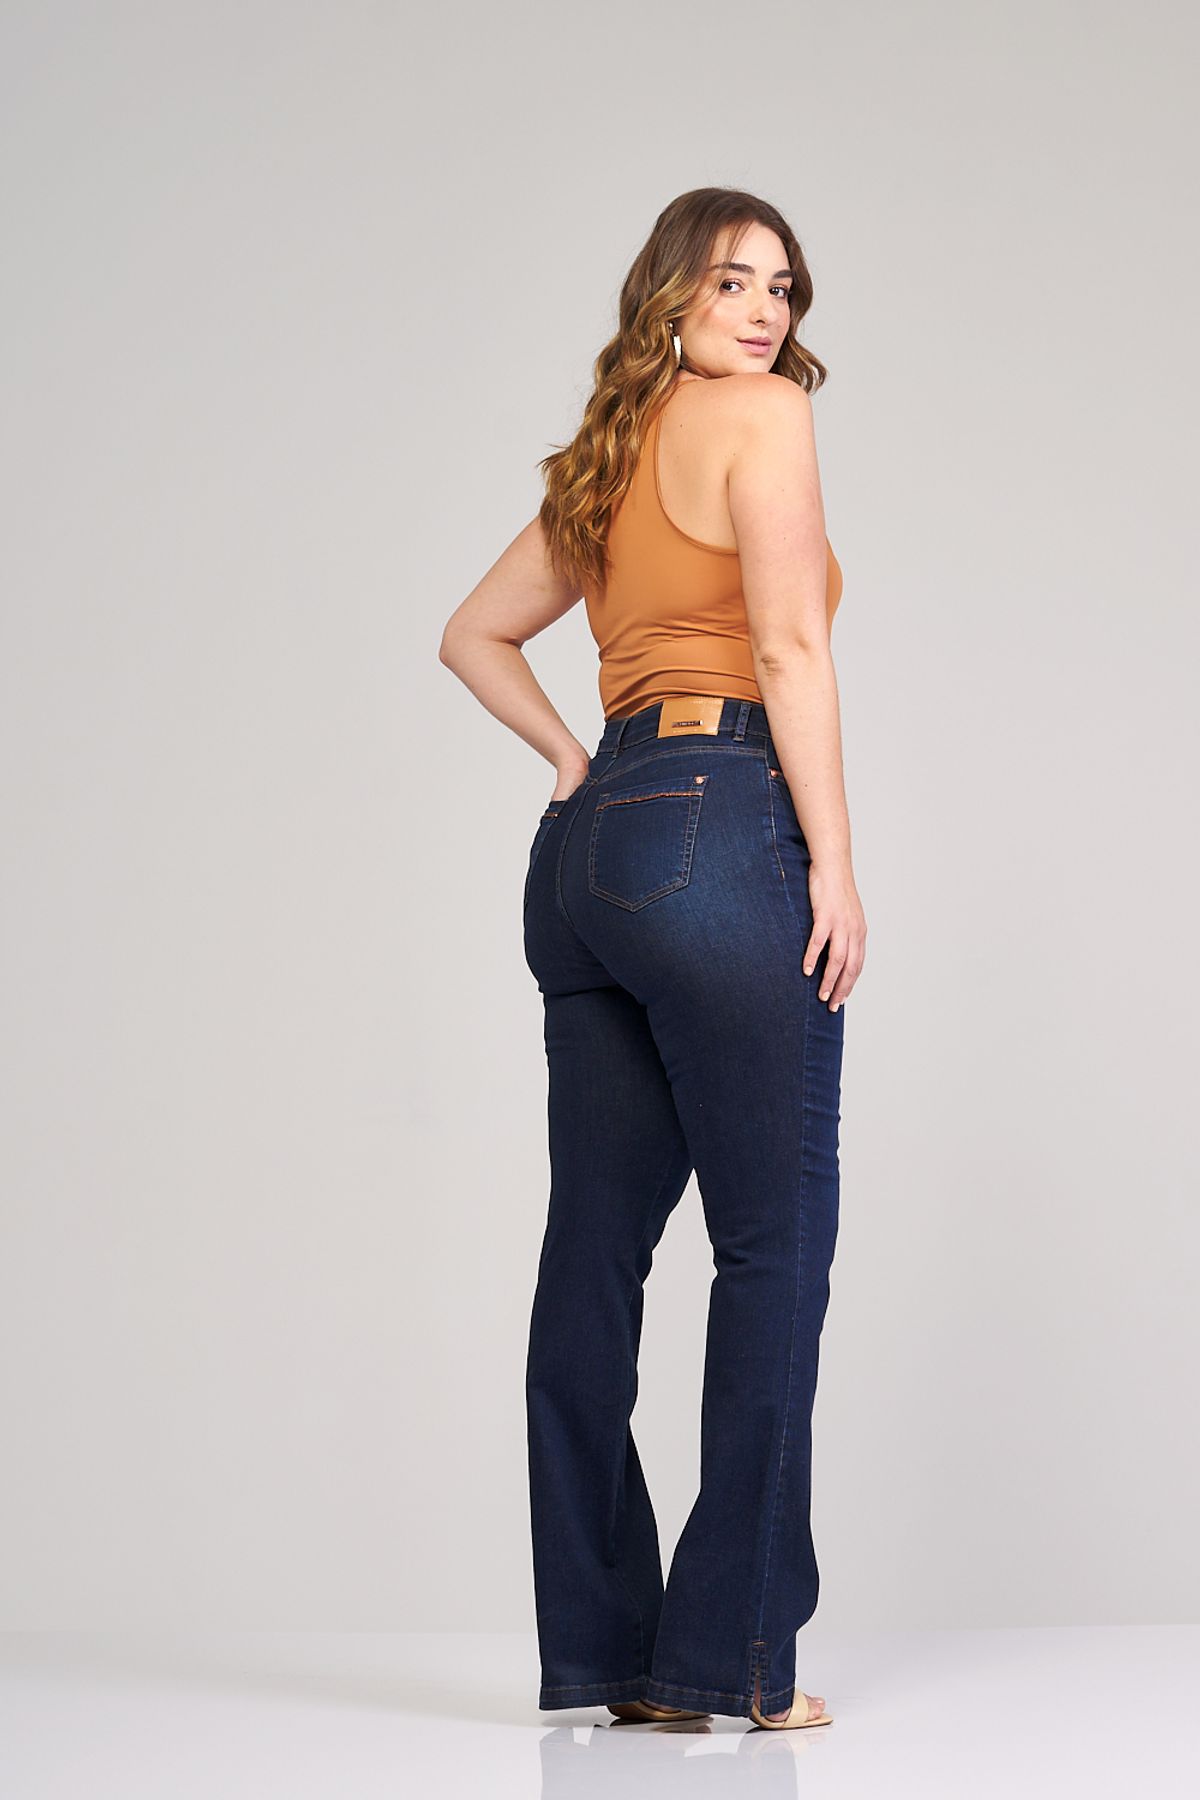 Calça Jeans Plus Size Boot Cut Detalhes no Avesso em Elastano Best